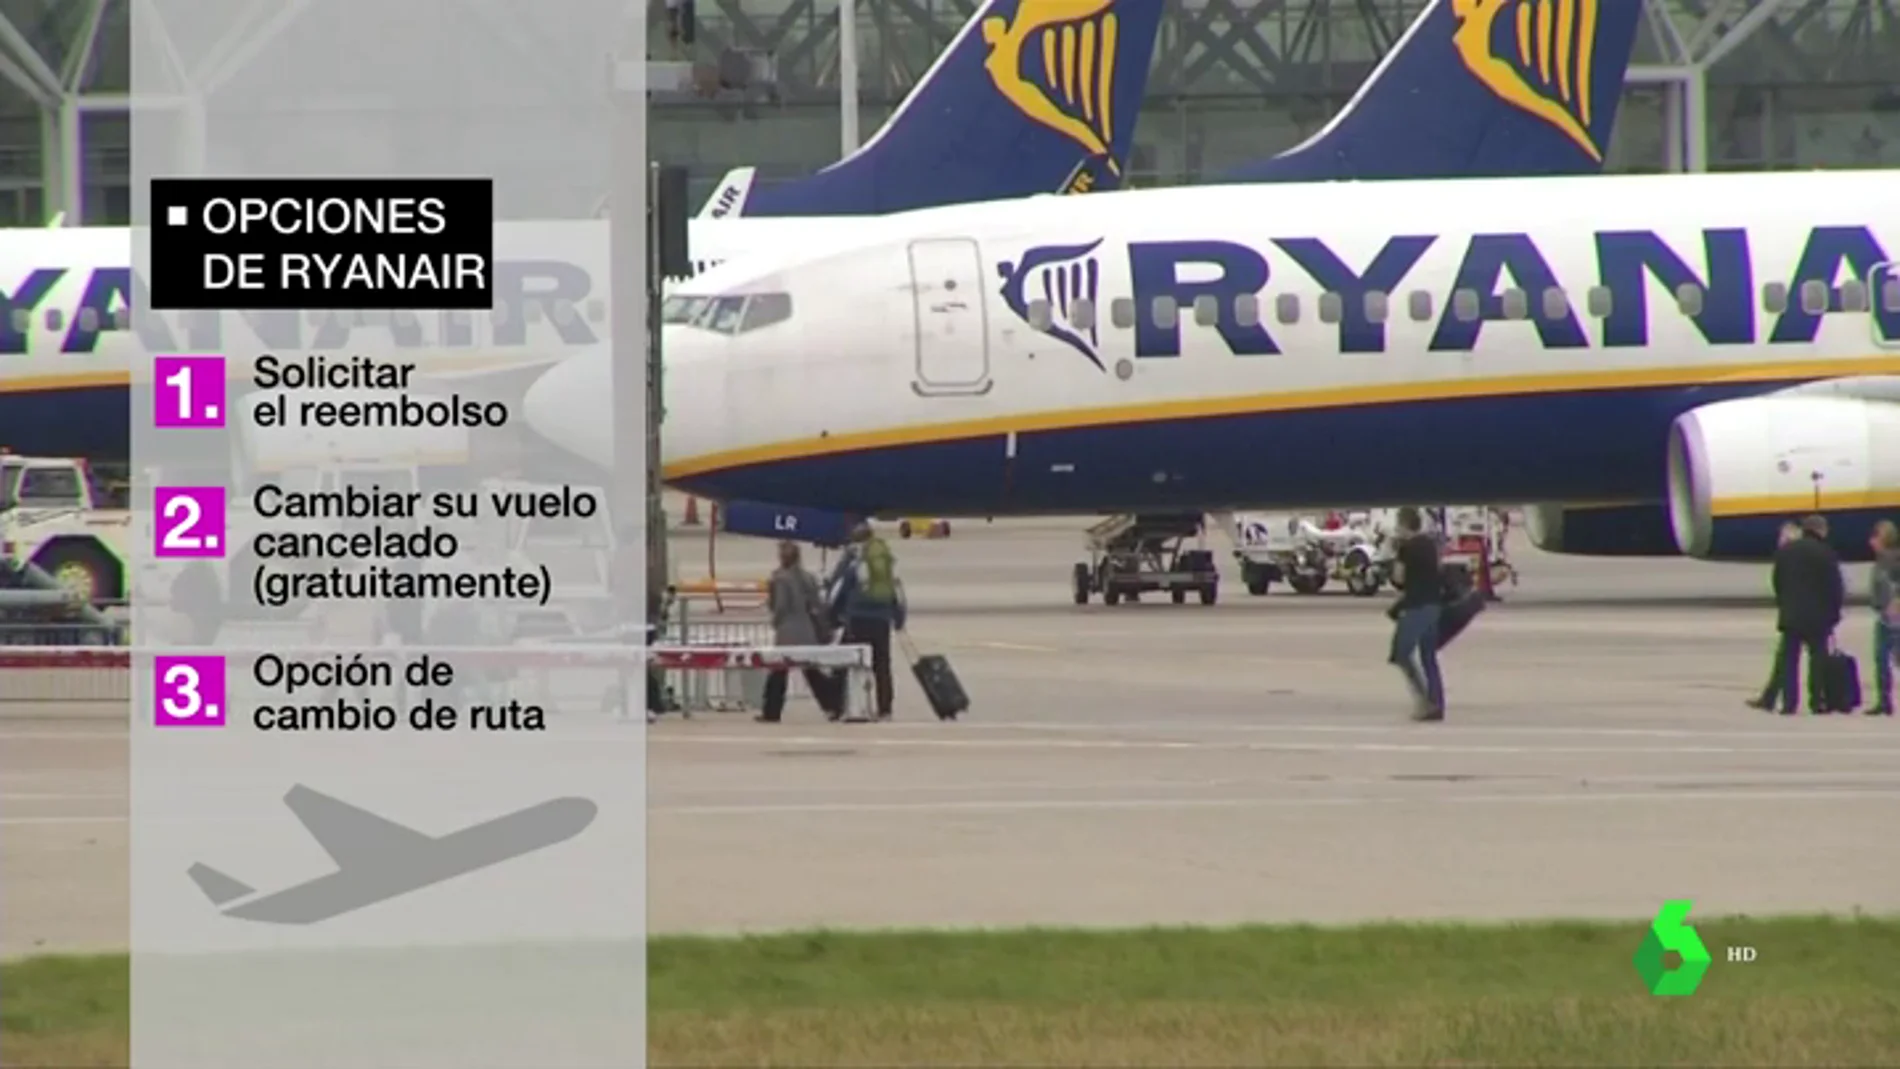 La huelga de Ryanair deja ya 75.000 afectados: "Van a tener que indemizarles con una cantidad entre los 250 y los 400 euros"